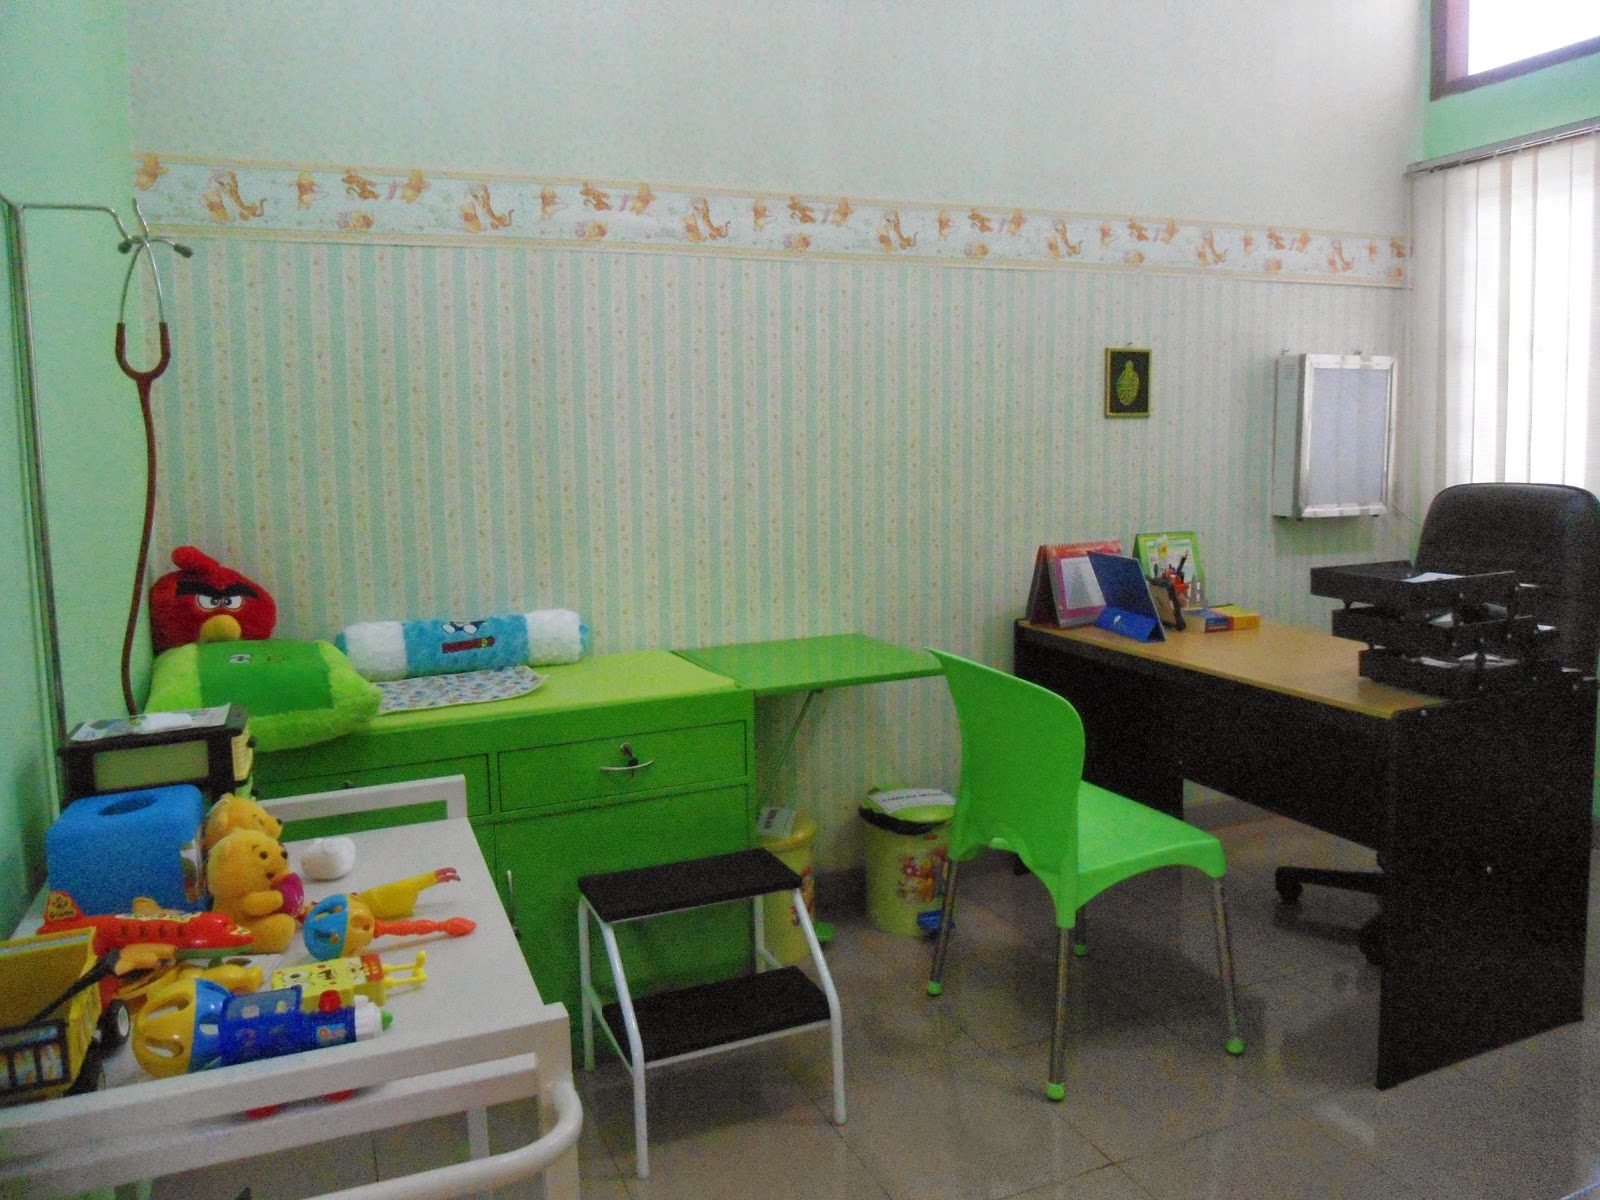 Klinik Spesialis Anak yang Nyaman dan Menyenangkan 